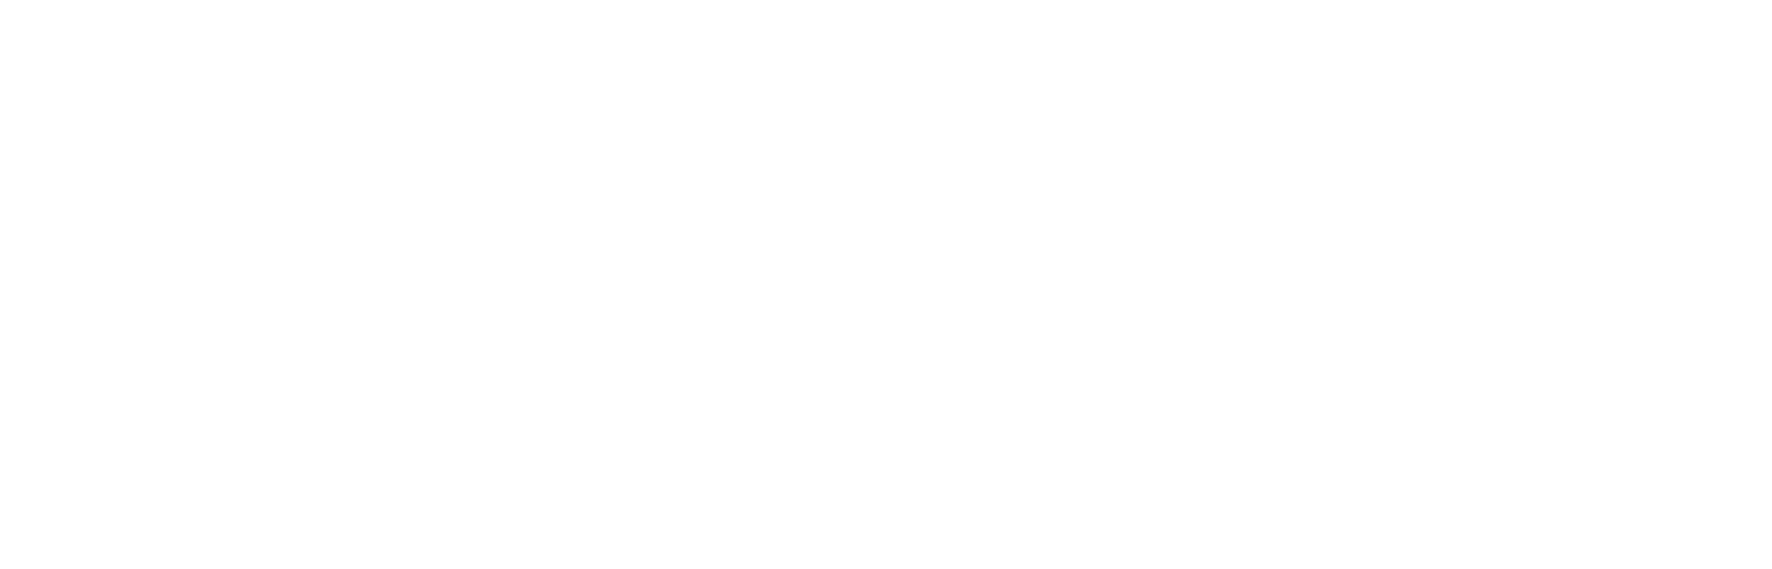 FREDDIE JUSTICE TITLE